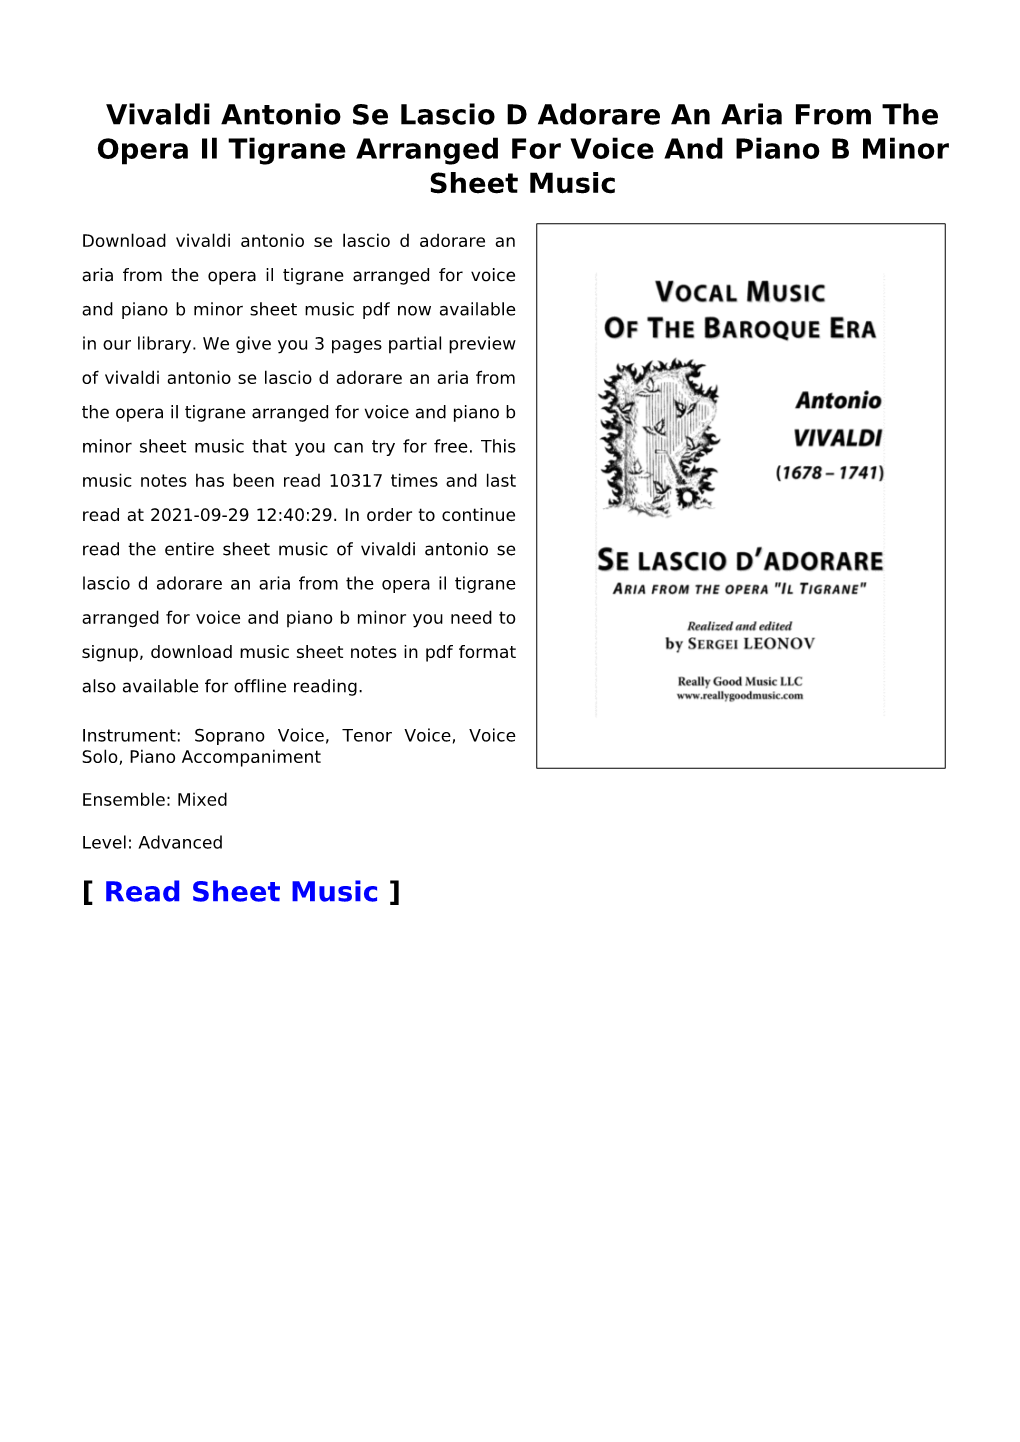 Vivaldi Antonio Se Lascio D Adorare an Aria from the Opera Il Tigrane Arranged for Voice and Piano B Minor Sheet Music